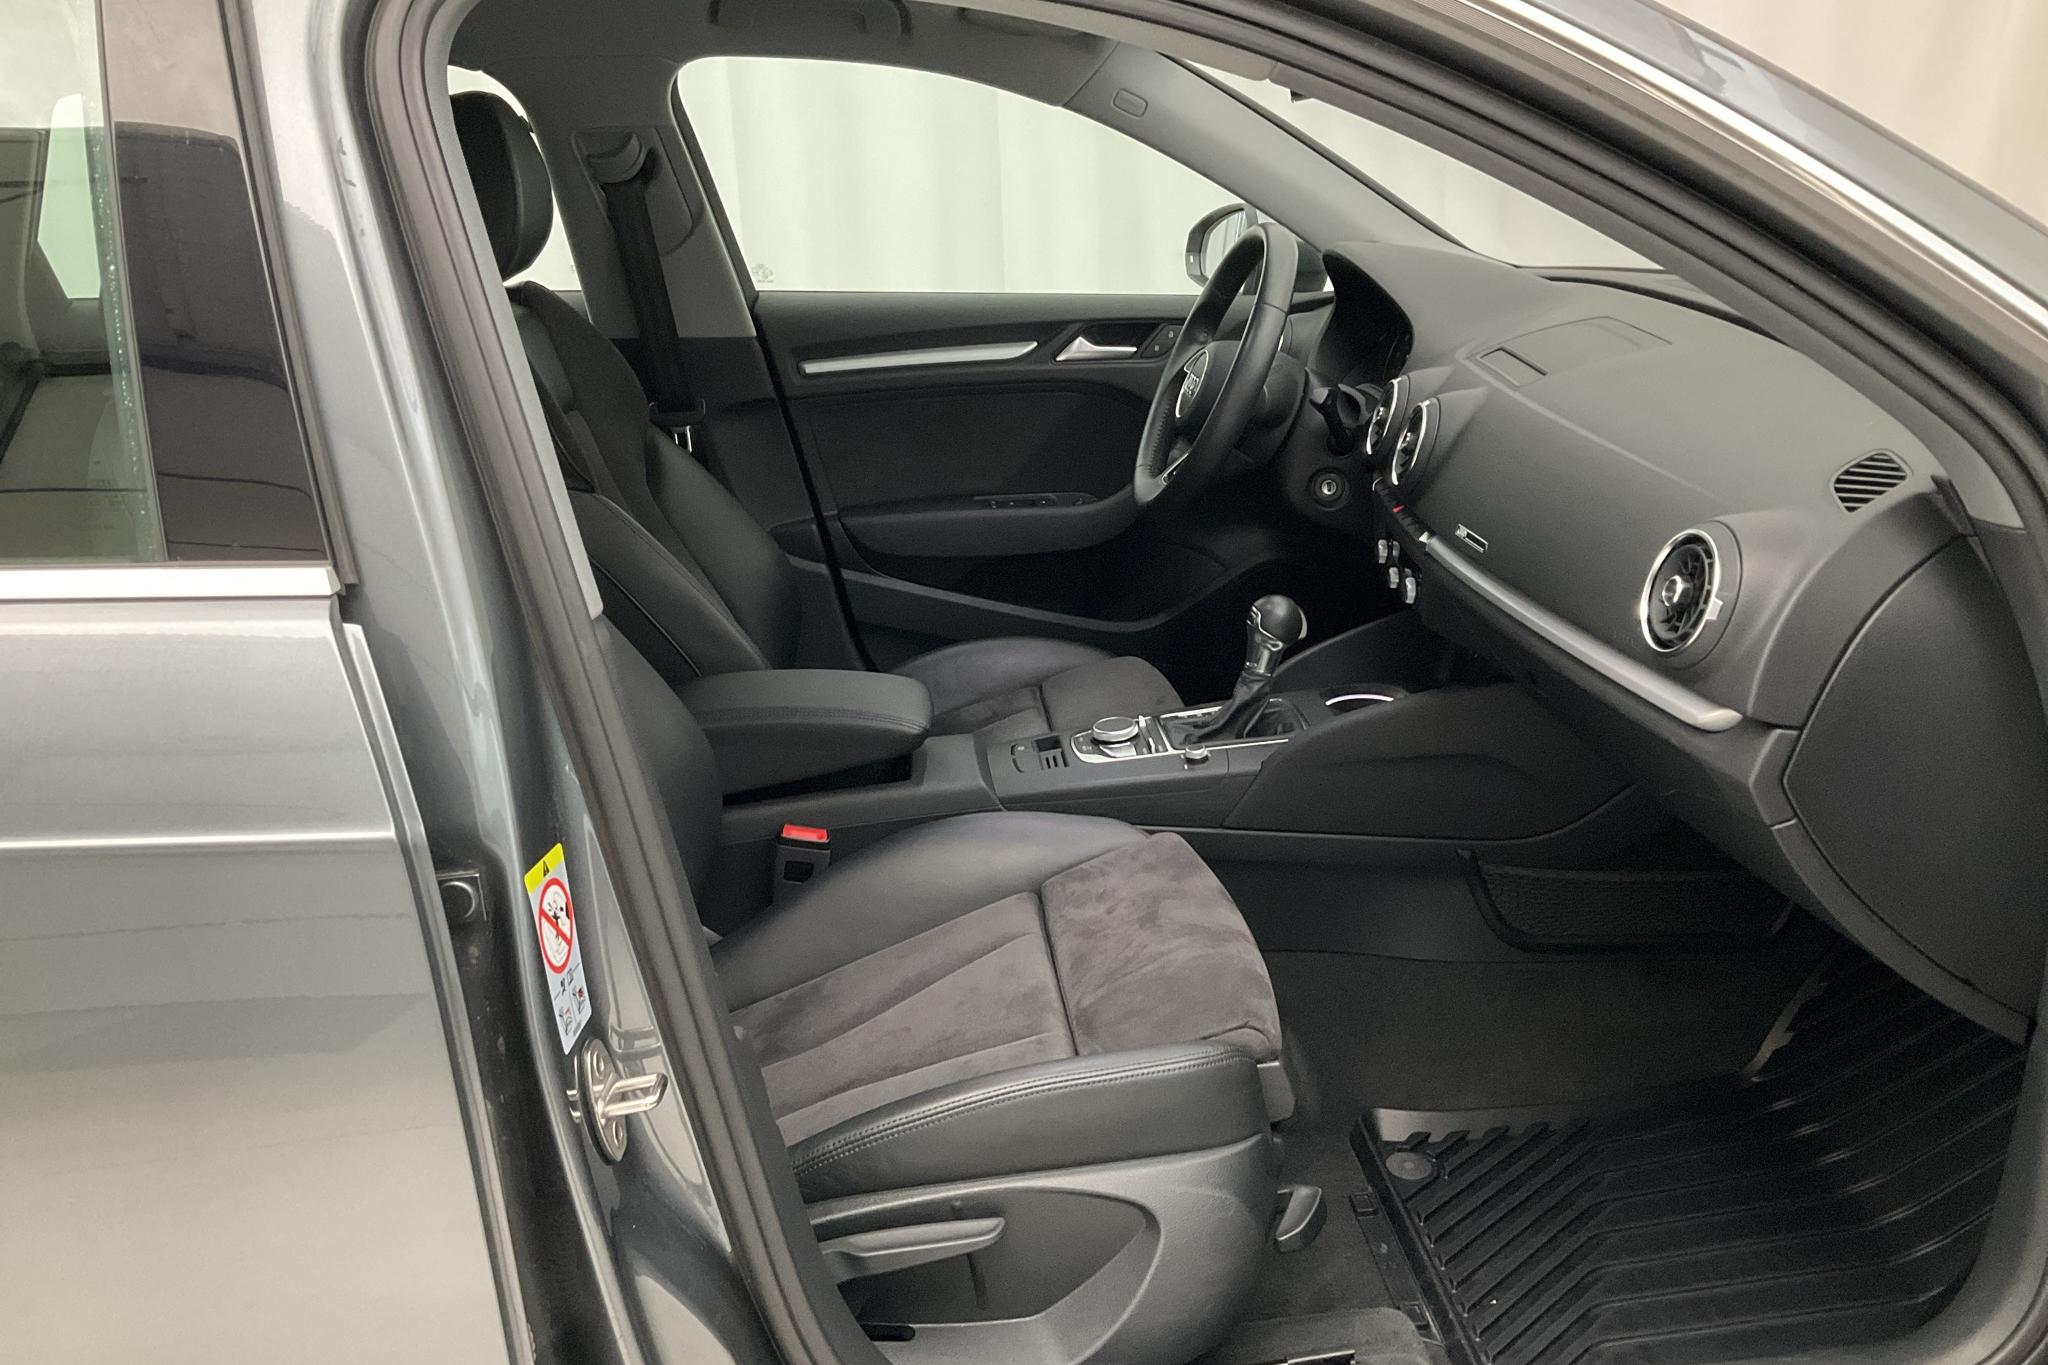 Audi A3 1.5 TFSI Sportback (150hk) - 83 020 km - Automatic - gray - 2018